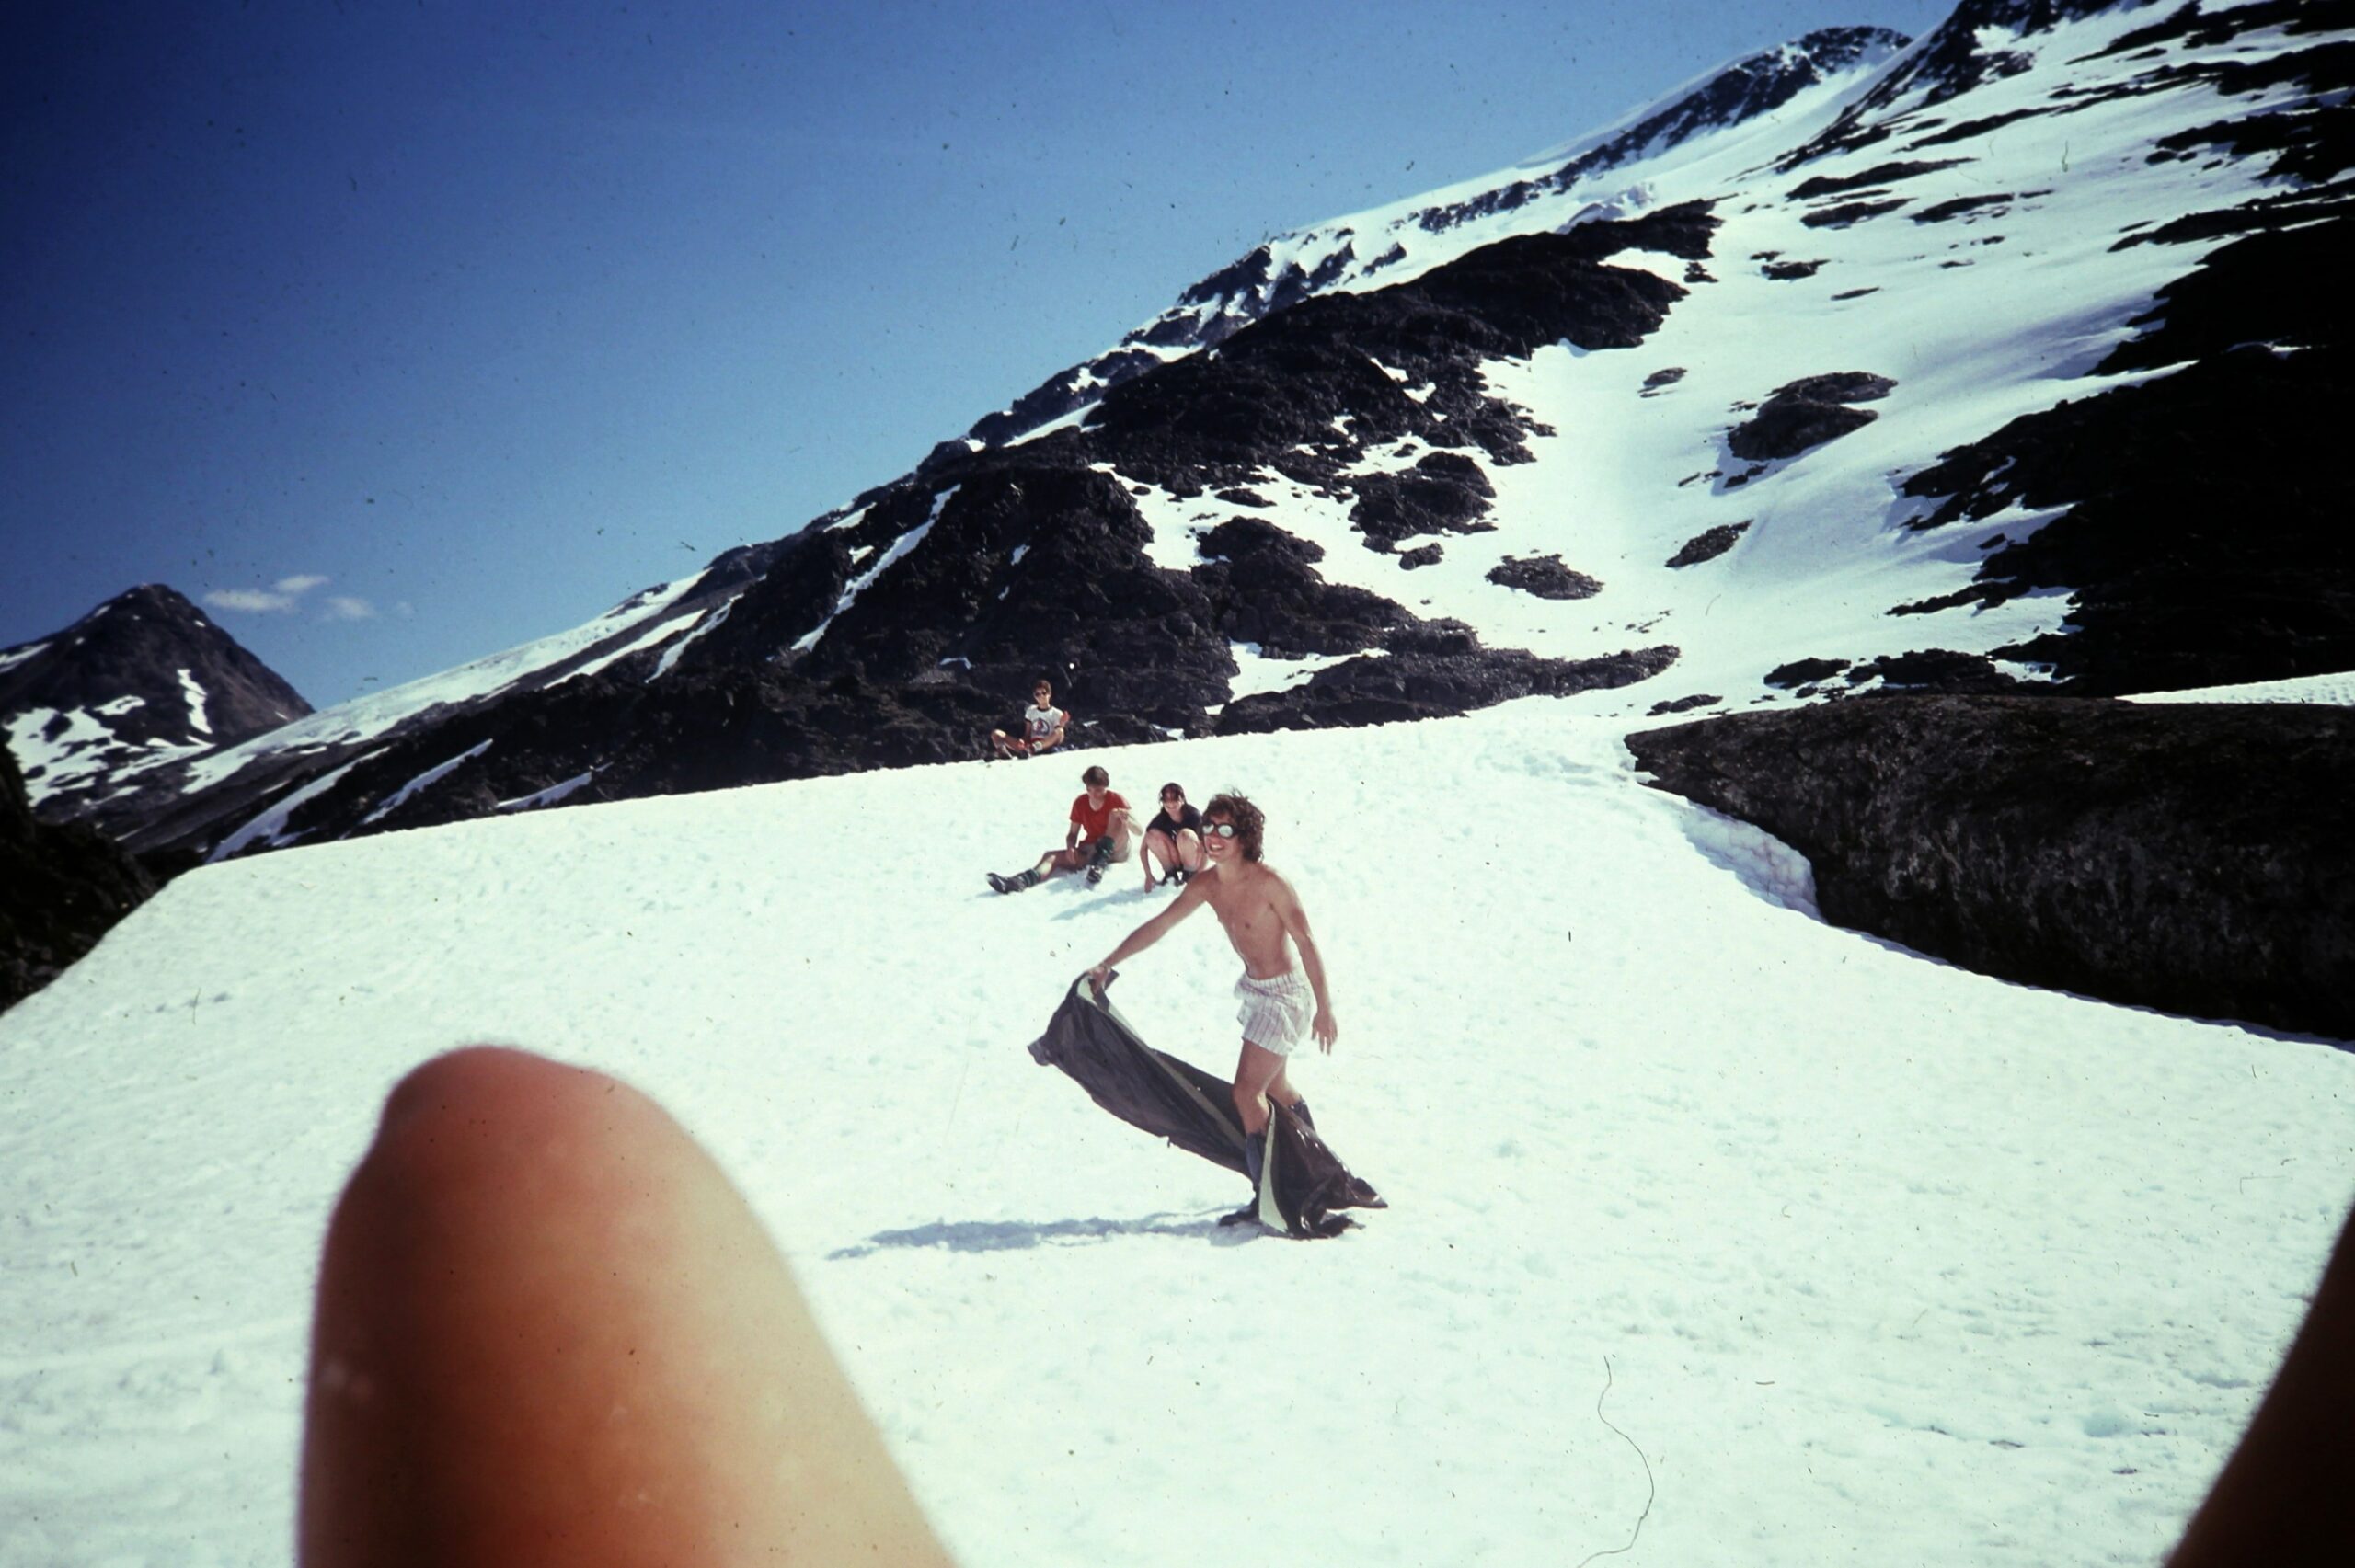 1981 Fun on the snow